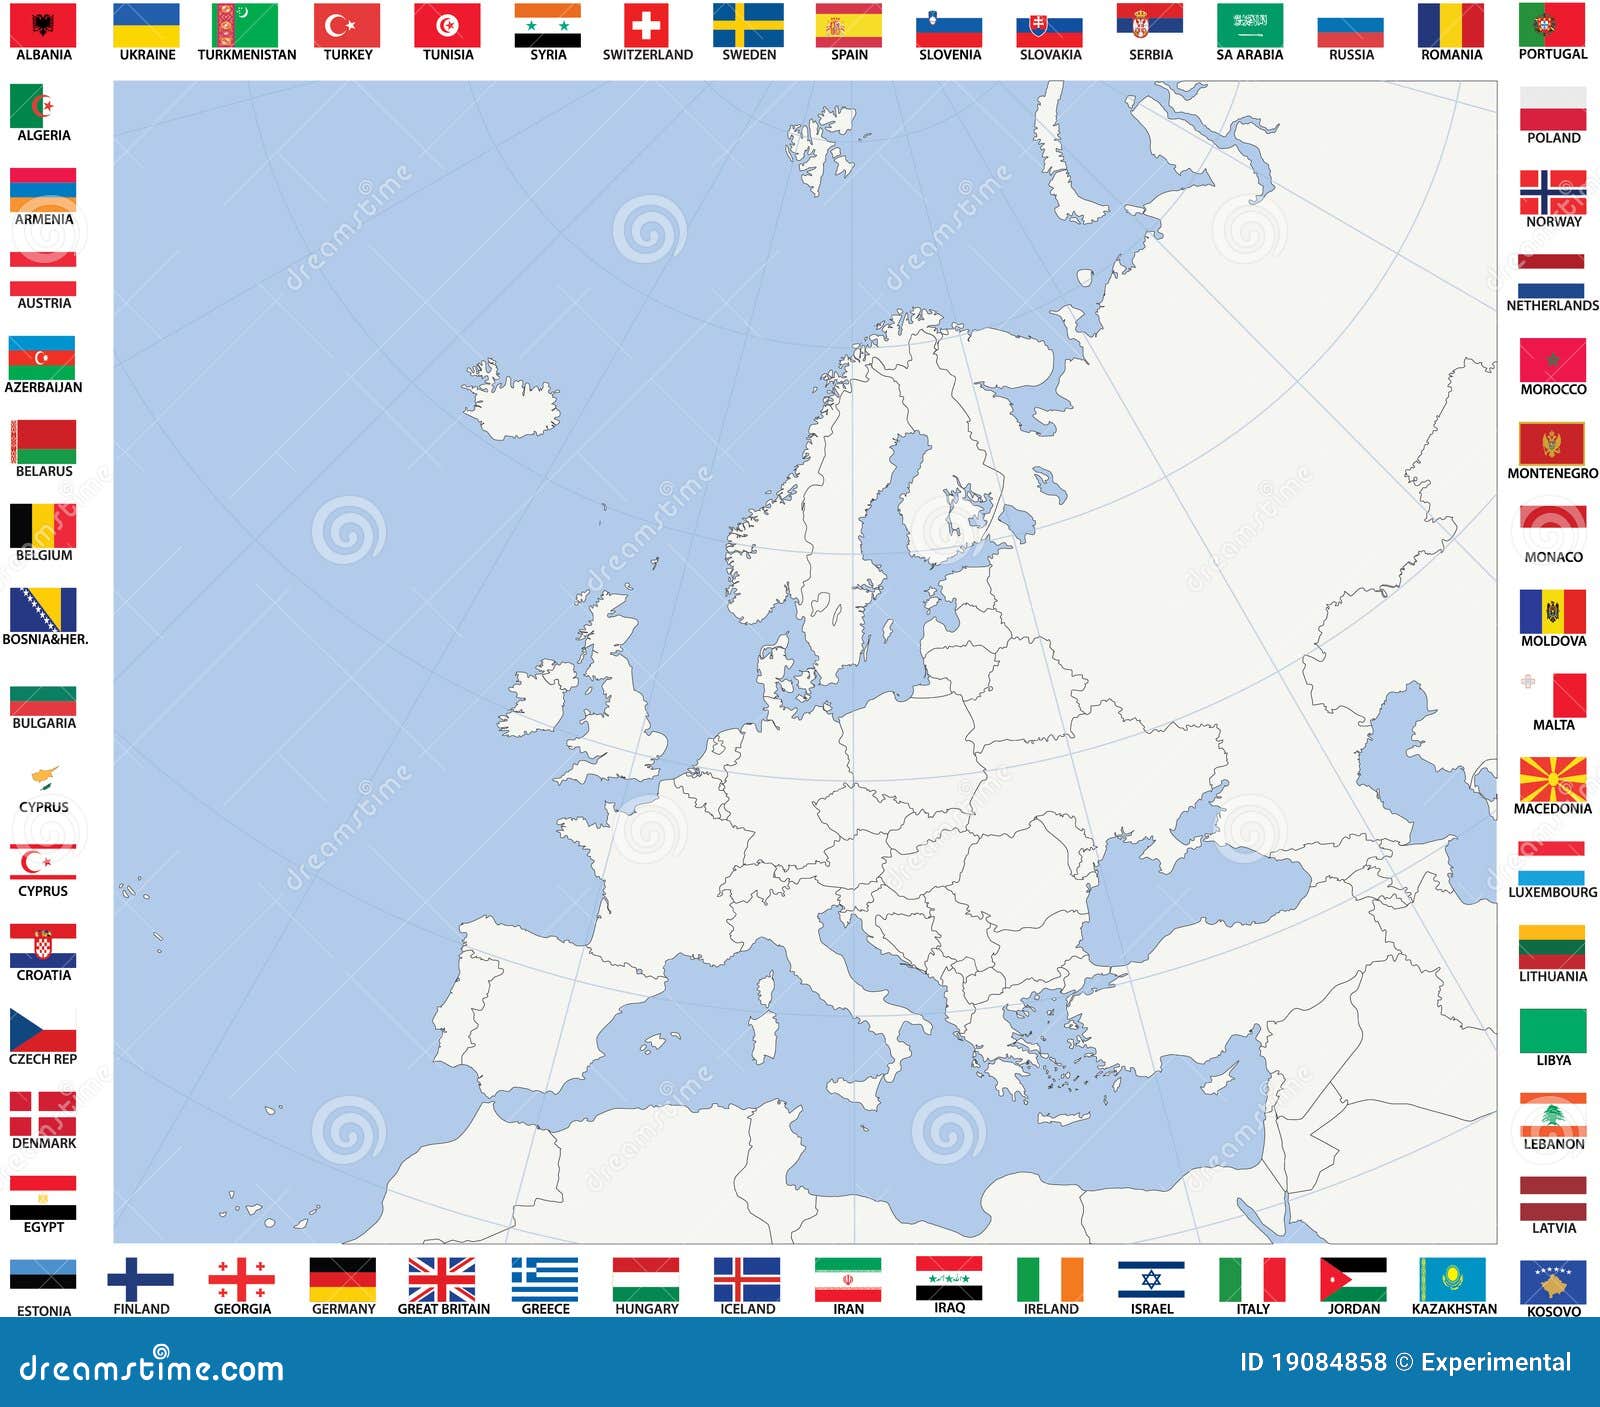 Lege kaart van Europa met polaire stereographic projectie